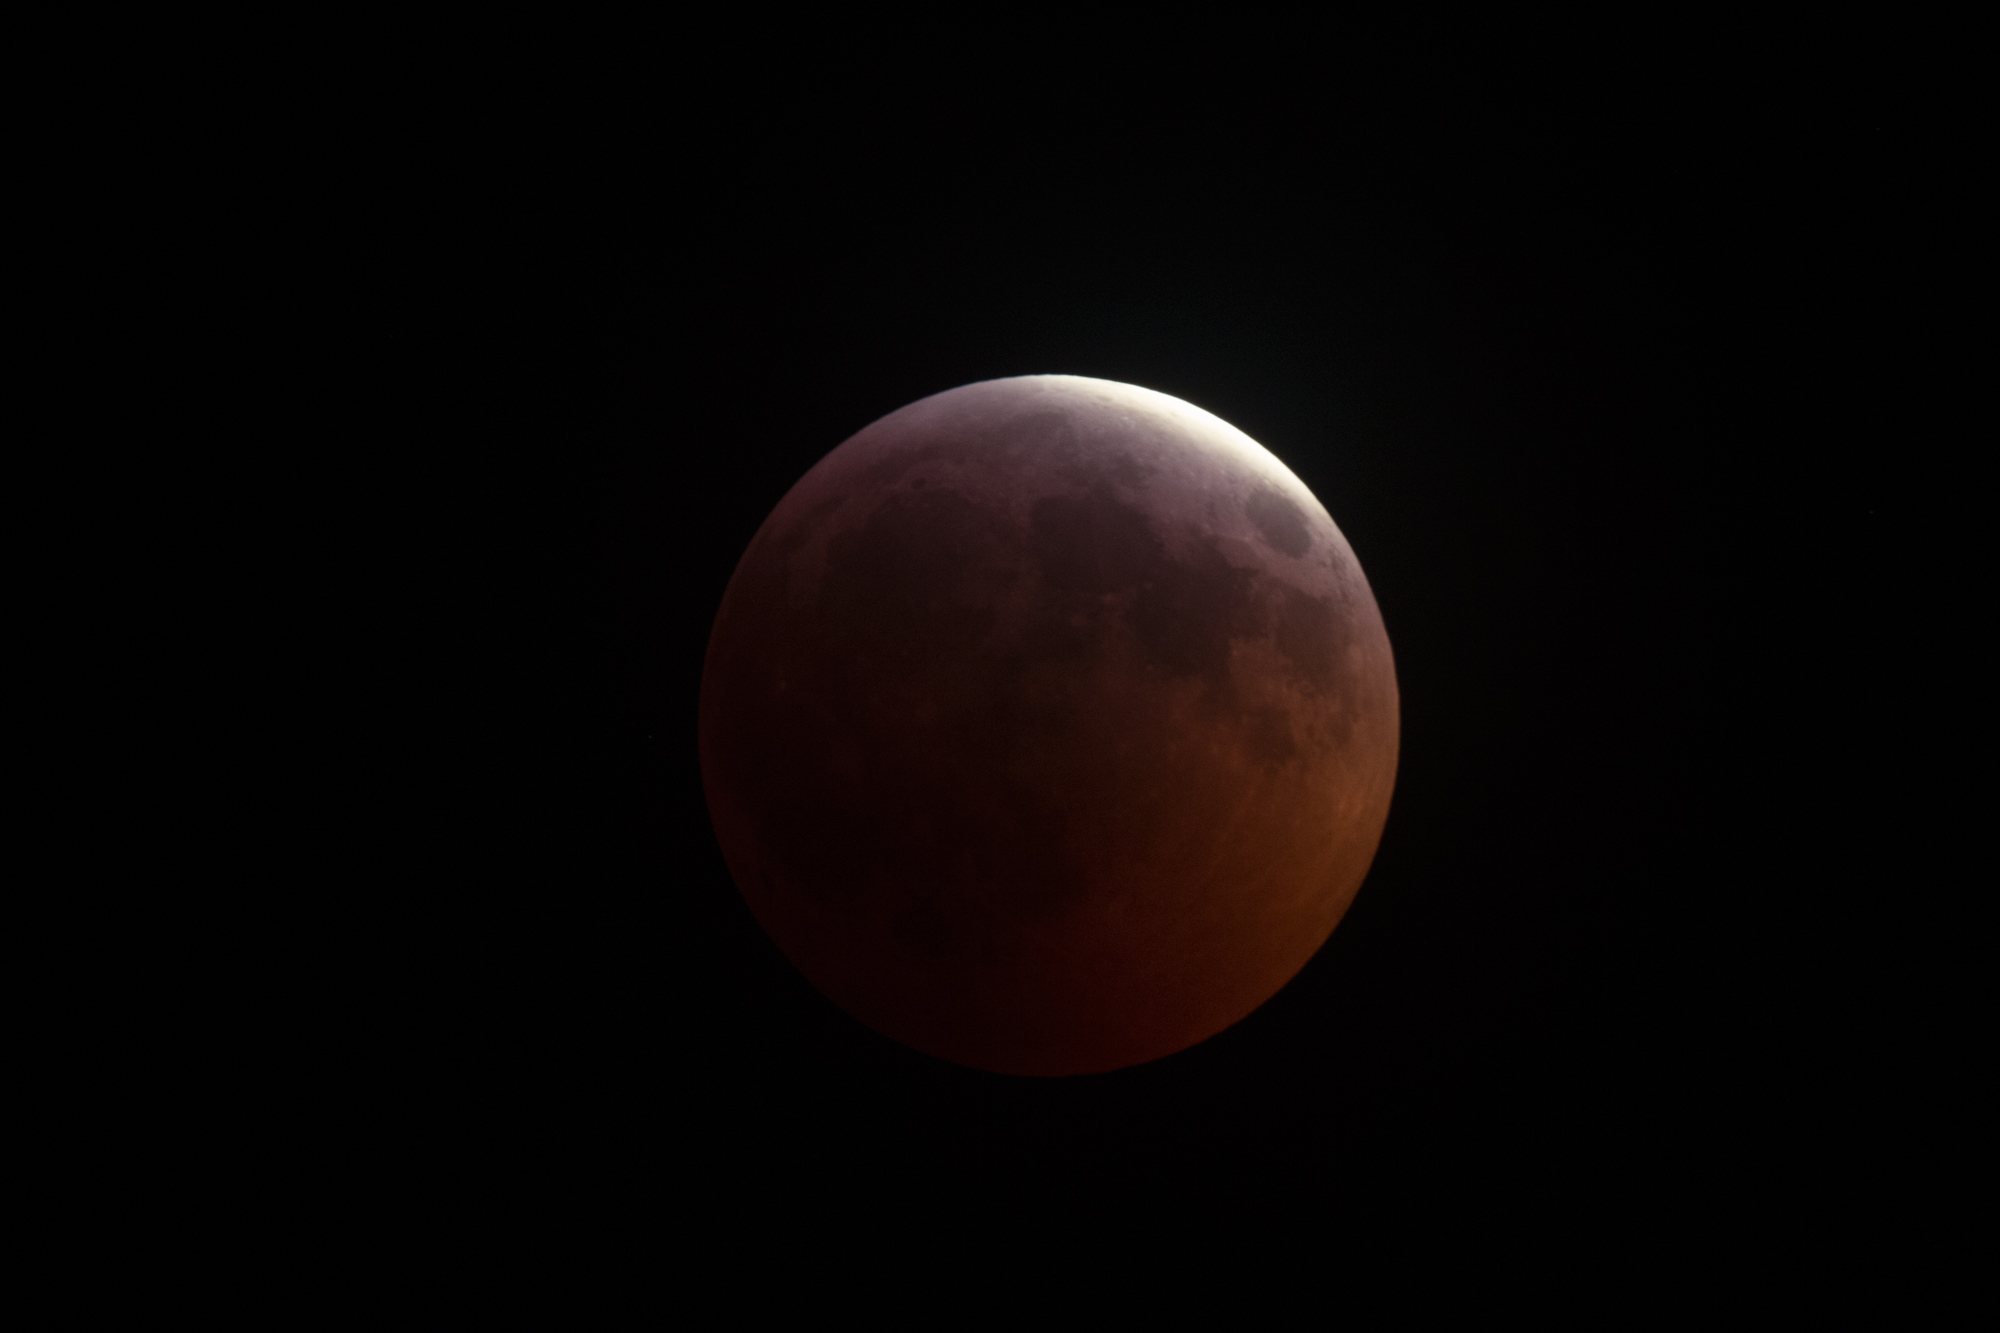 maanverd210119-2-large.jpg